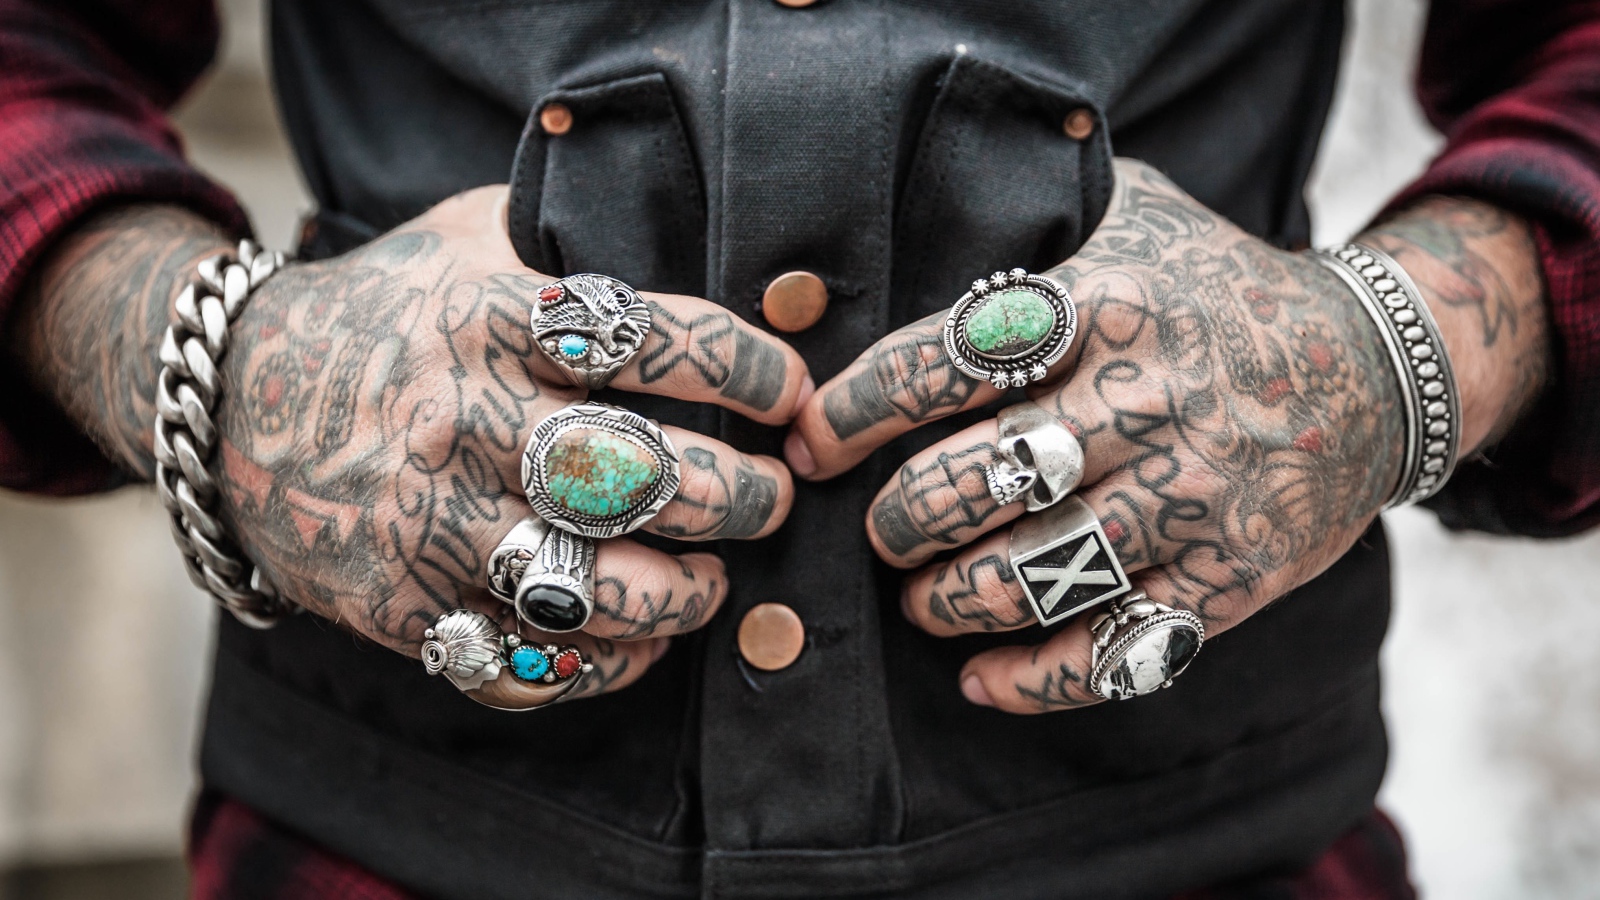 Татуировки на руках мужчины с перстнями